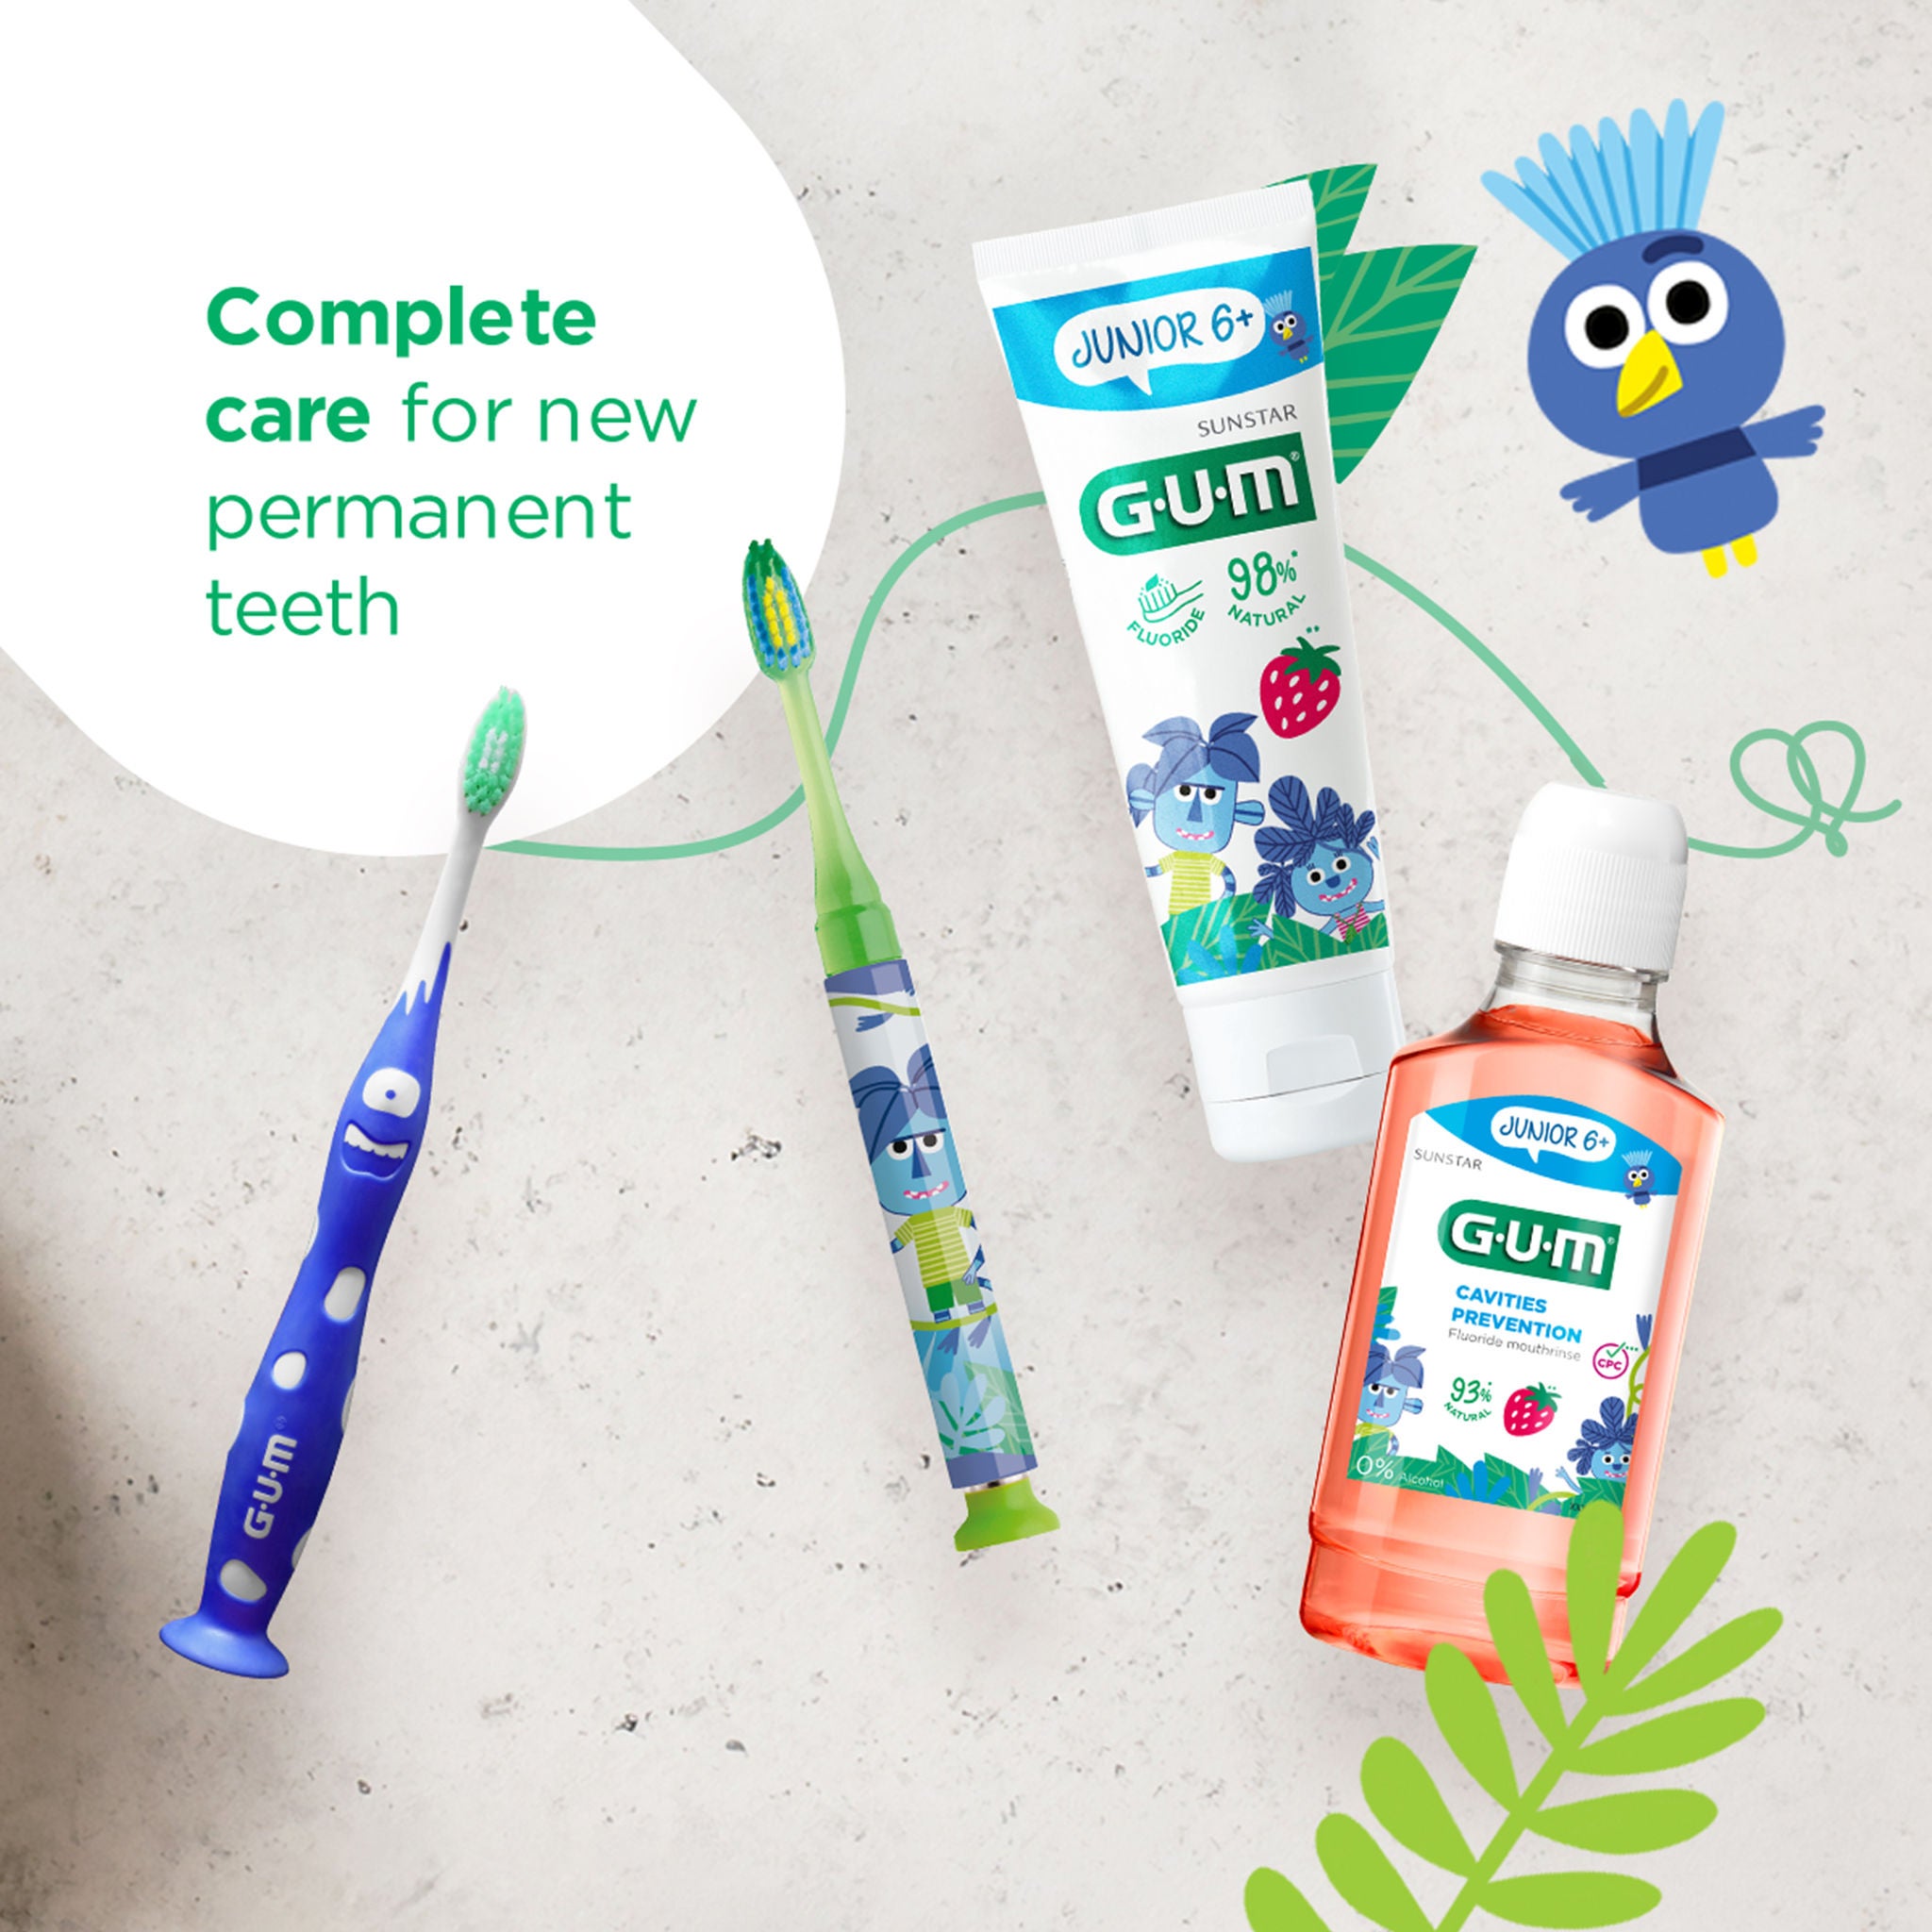 GUM JUNIOR 6+ toothpaste, GUM JUNIOR 6+ toothbrush, GUM LIGHT-UP toothbrush, GUM JUNIOR 6+ mouthwash